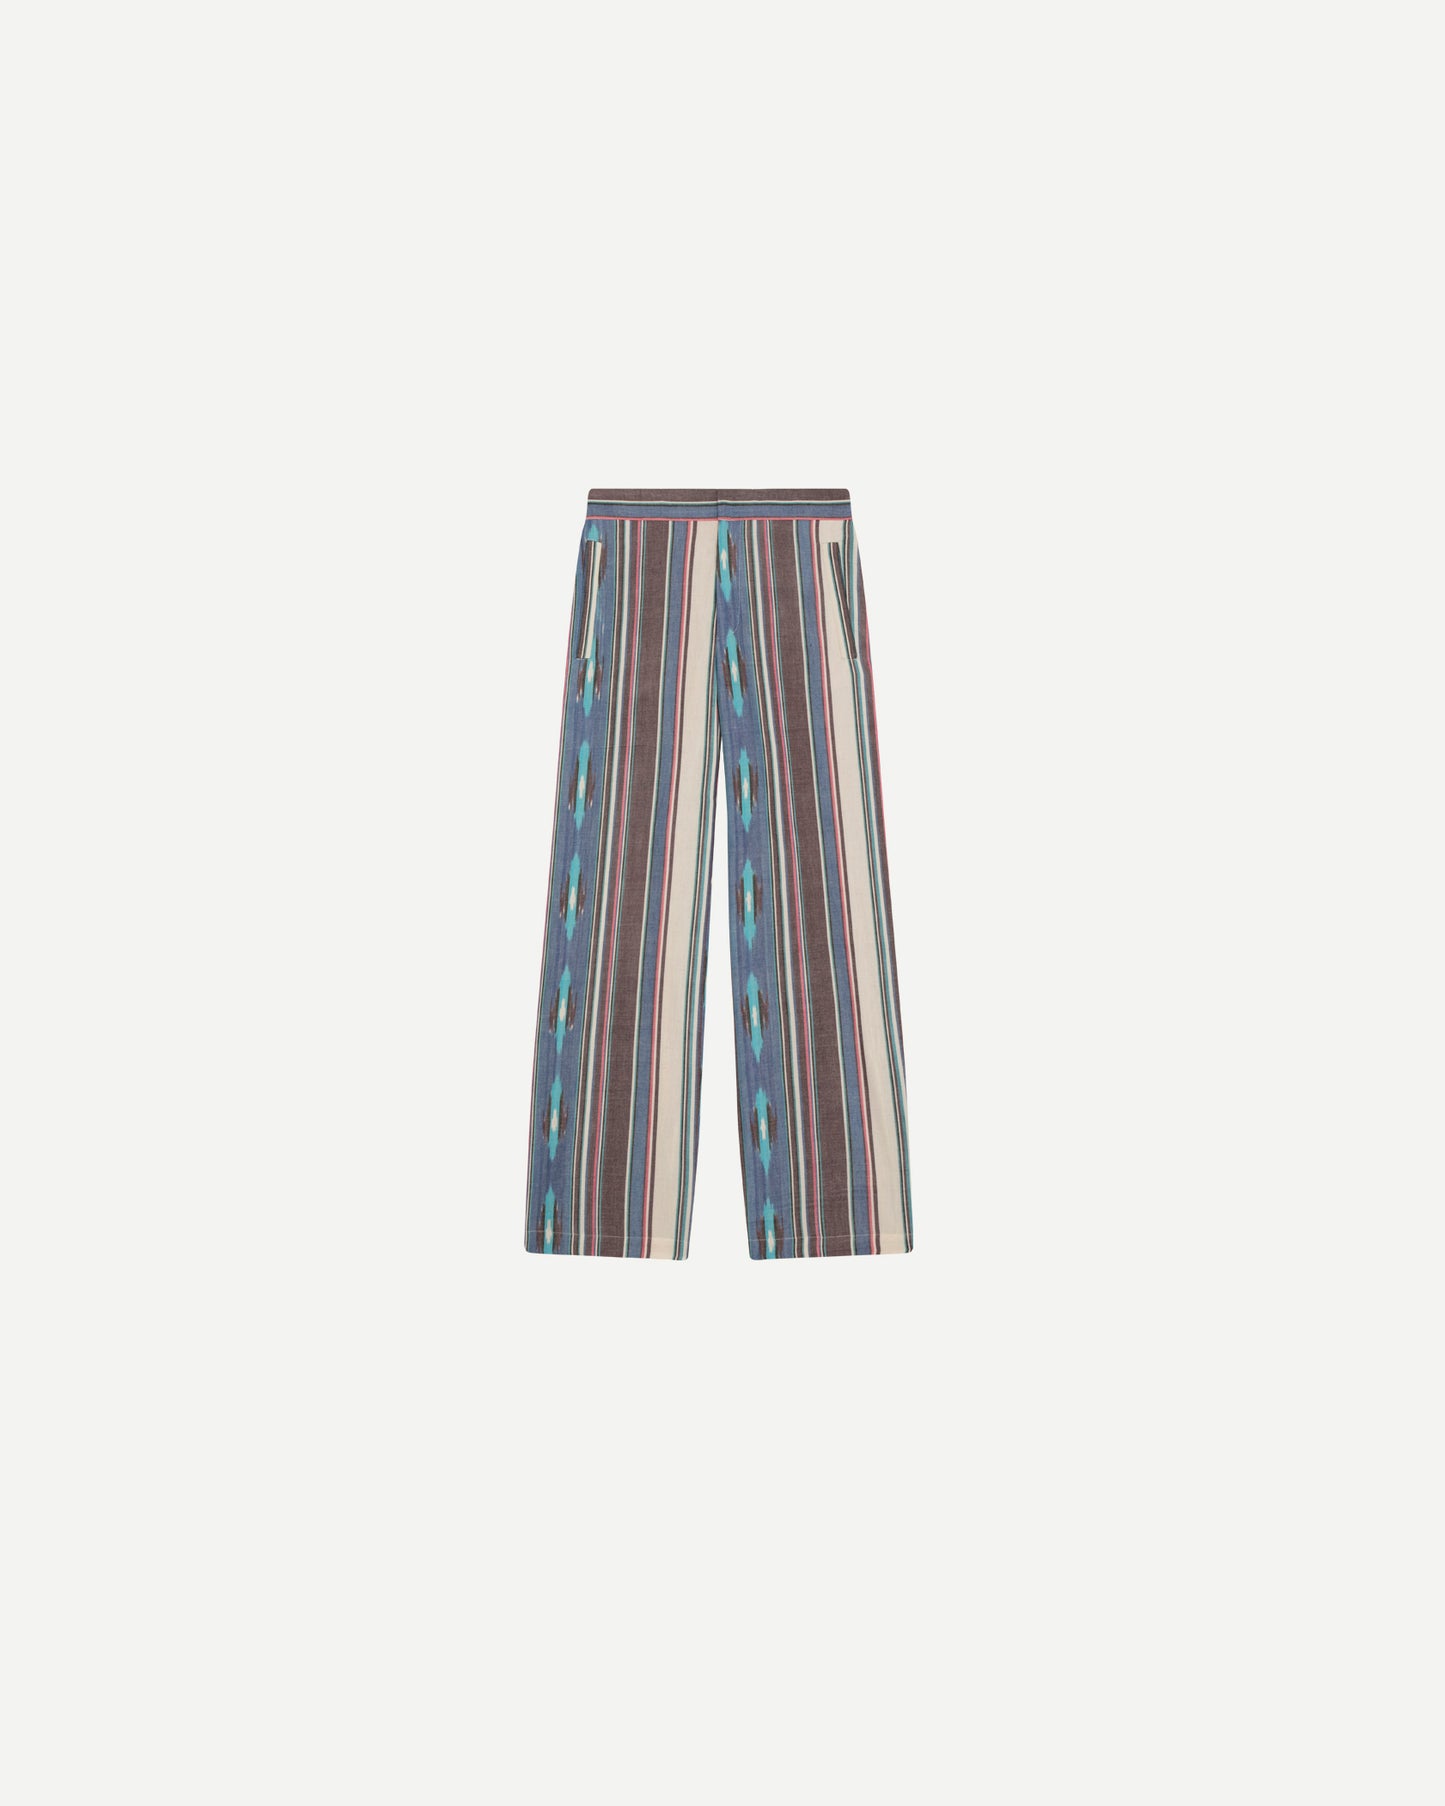 Pantalons de luxe pour homme Erevan, taille mi haute, ceinture dos elastique, coton ikat rayures colorées, fabriqué au portugal